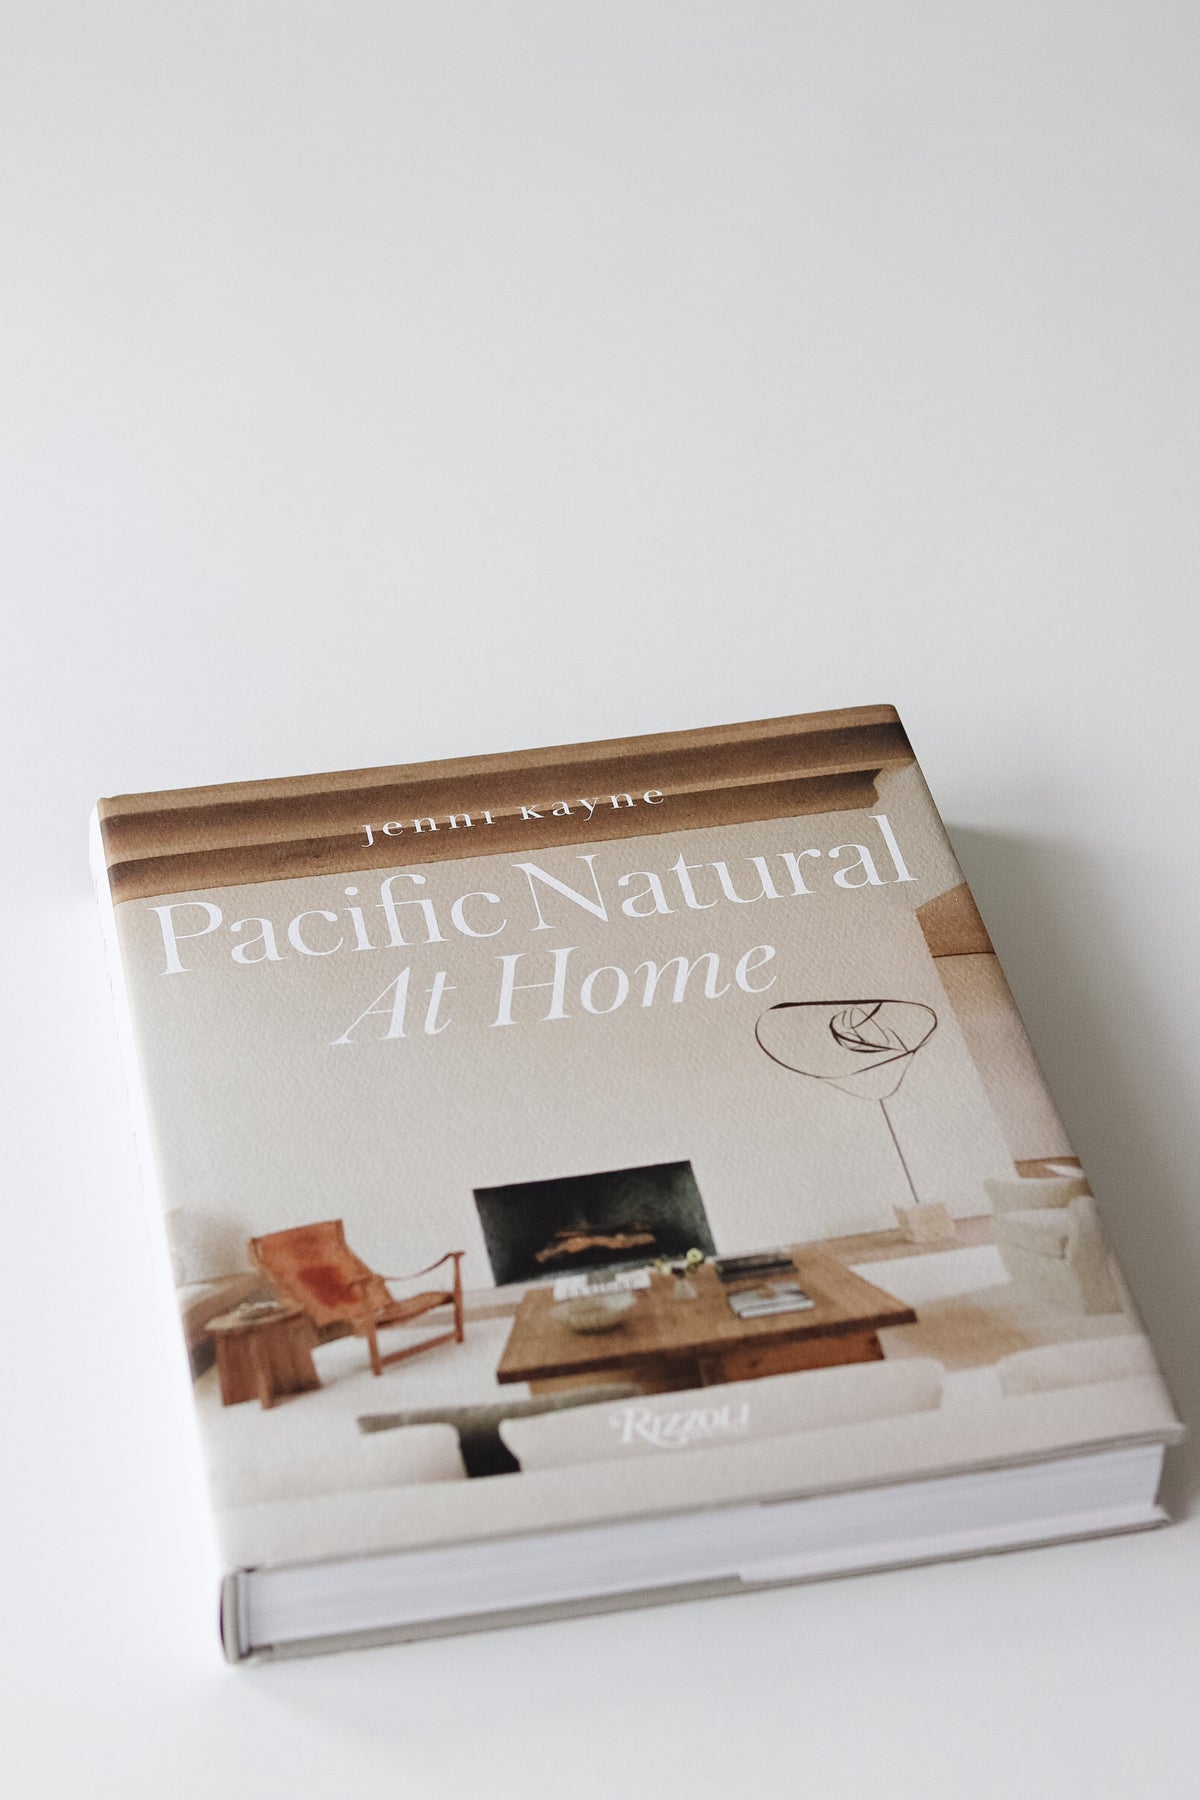 Pacific Natural At Home By Jenni Kayne